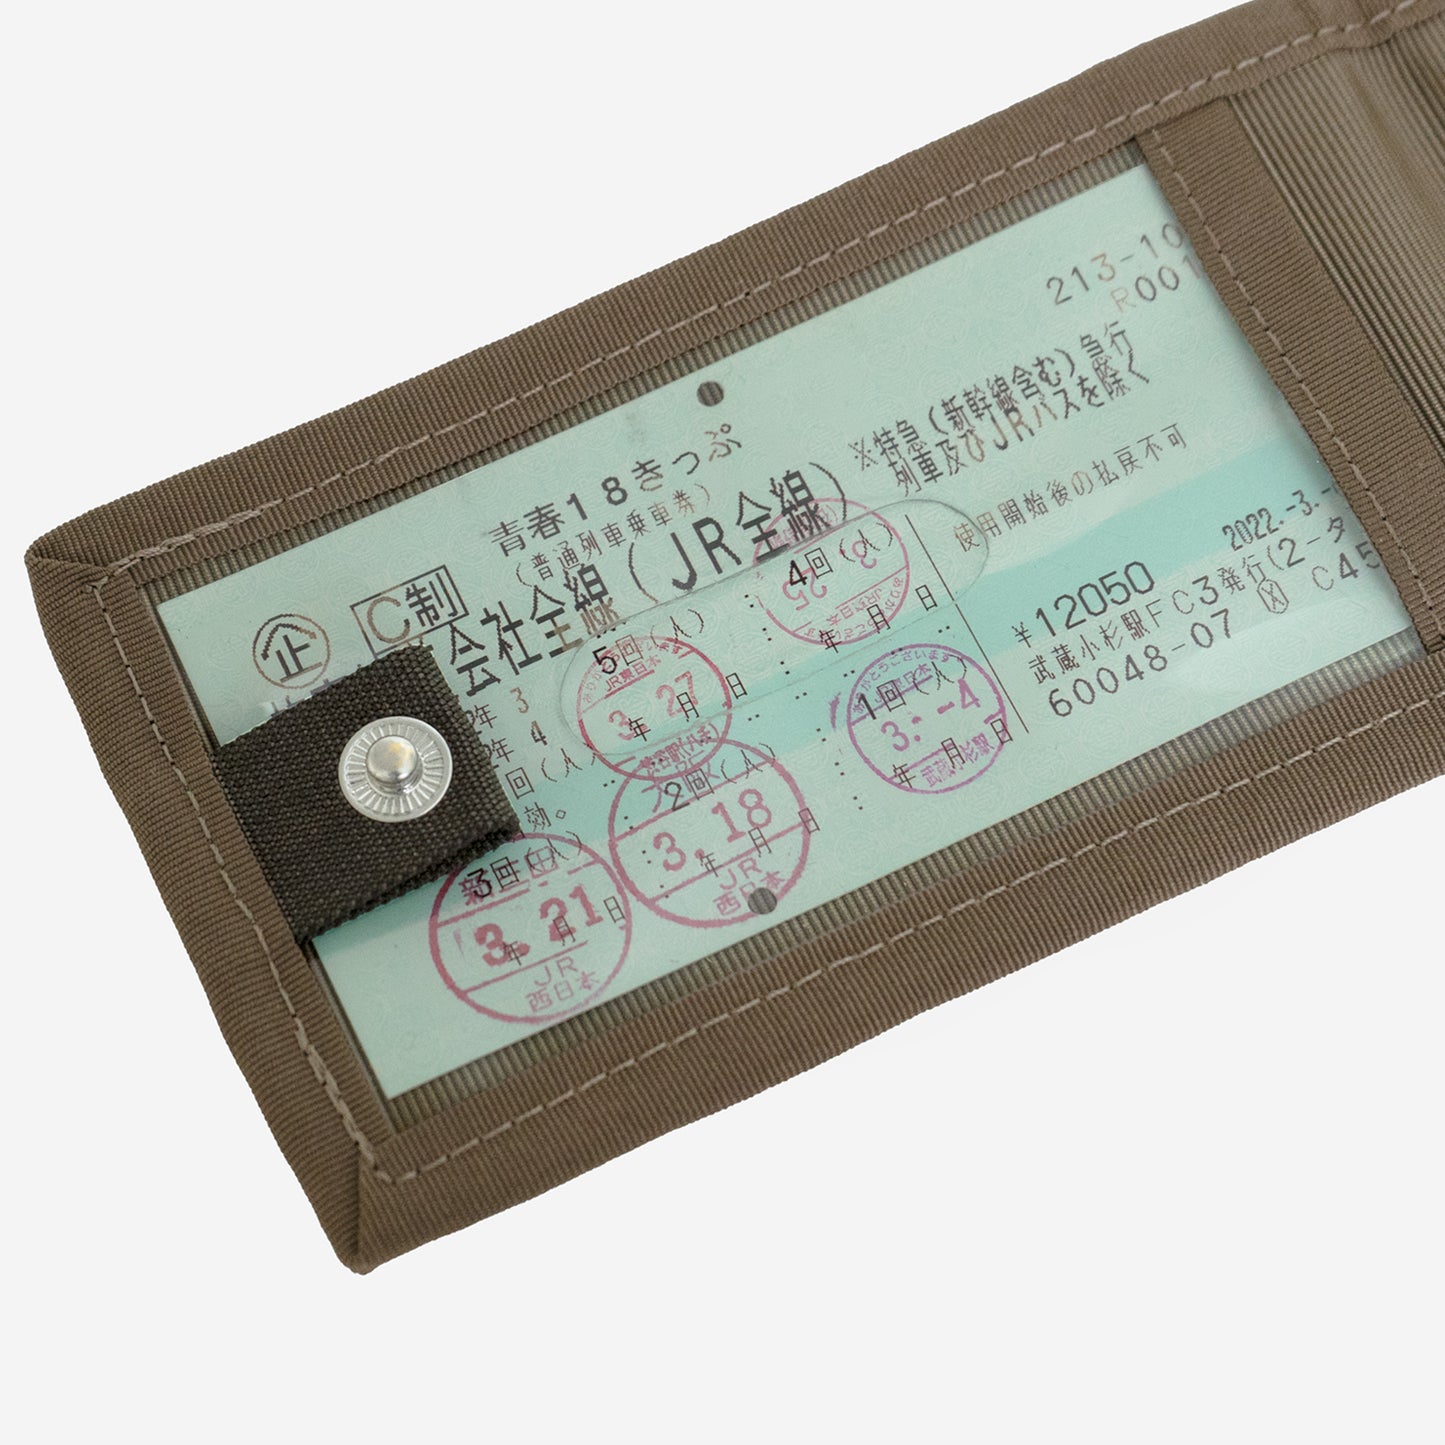 「N700系typeA東海道新幹線モケットハードスーツケース」付属チケットホルダーは、青春18きっぷなどの長さがあるチケットも入るサイズ。両面に収納スペースがあるので、複数枚でも見やすい仕様です。ホックで留めて、収納しているチケットや個人情報を隠すことができます。